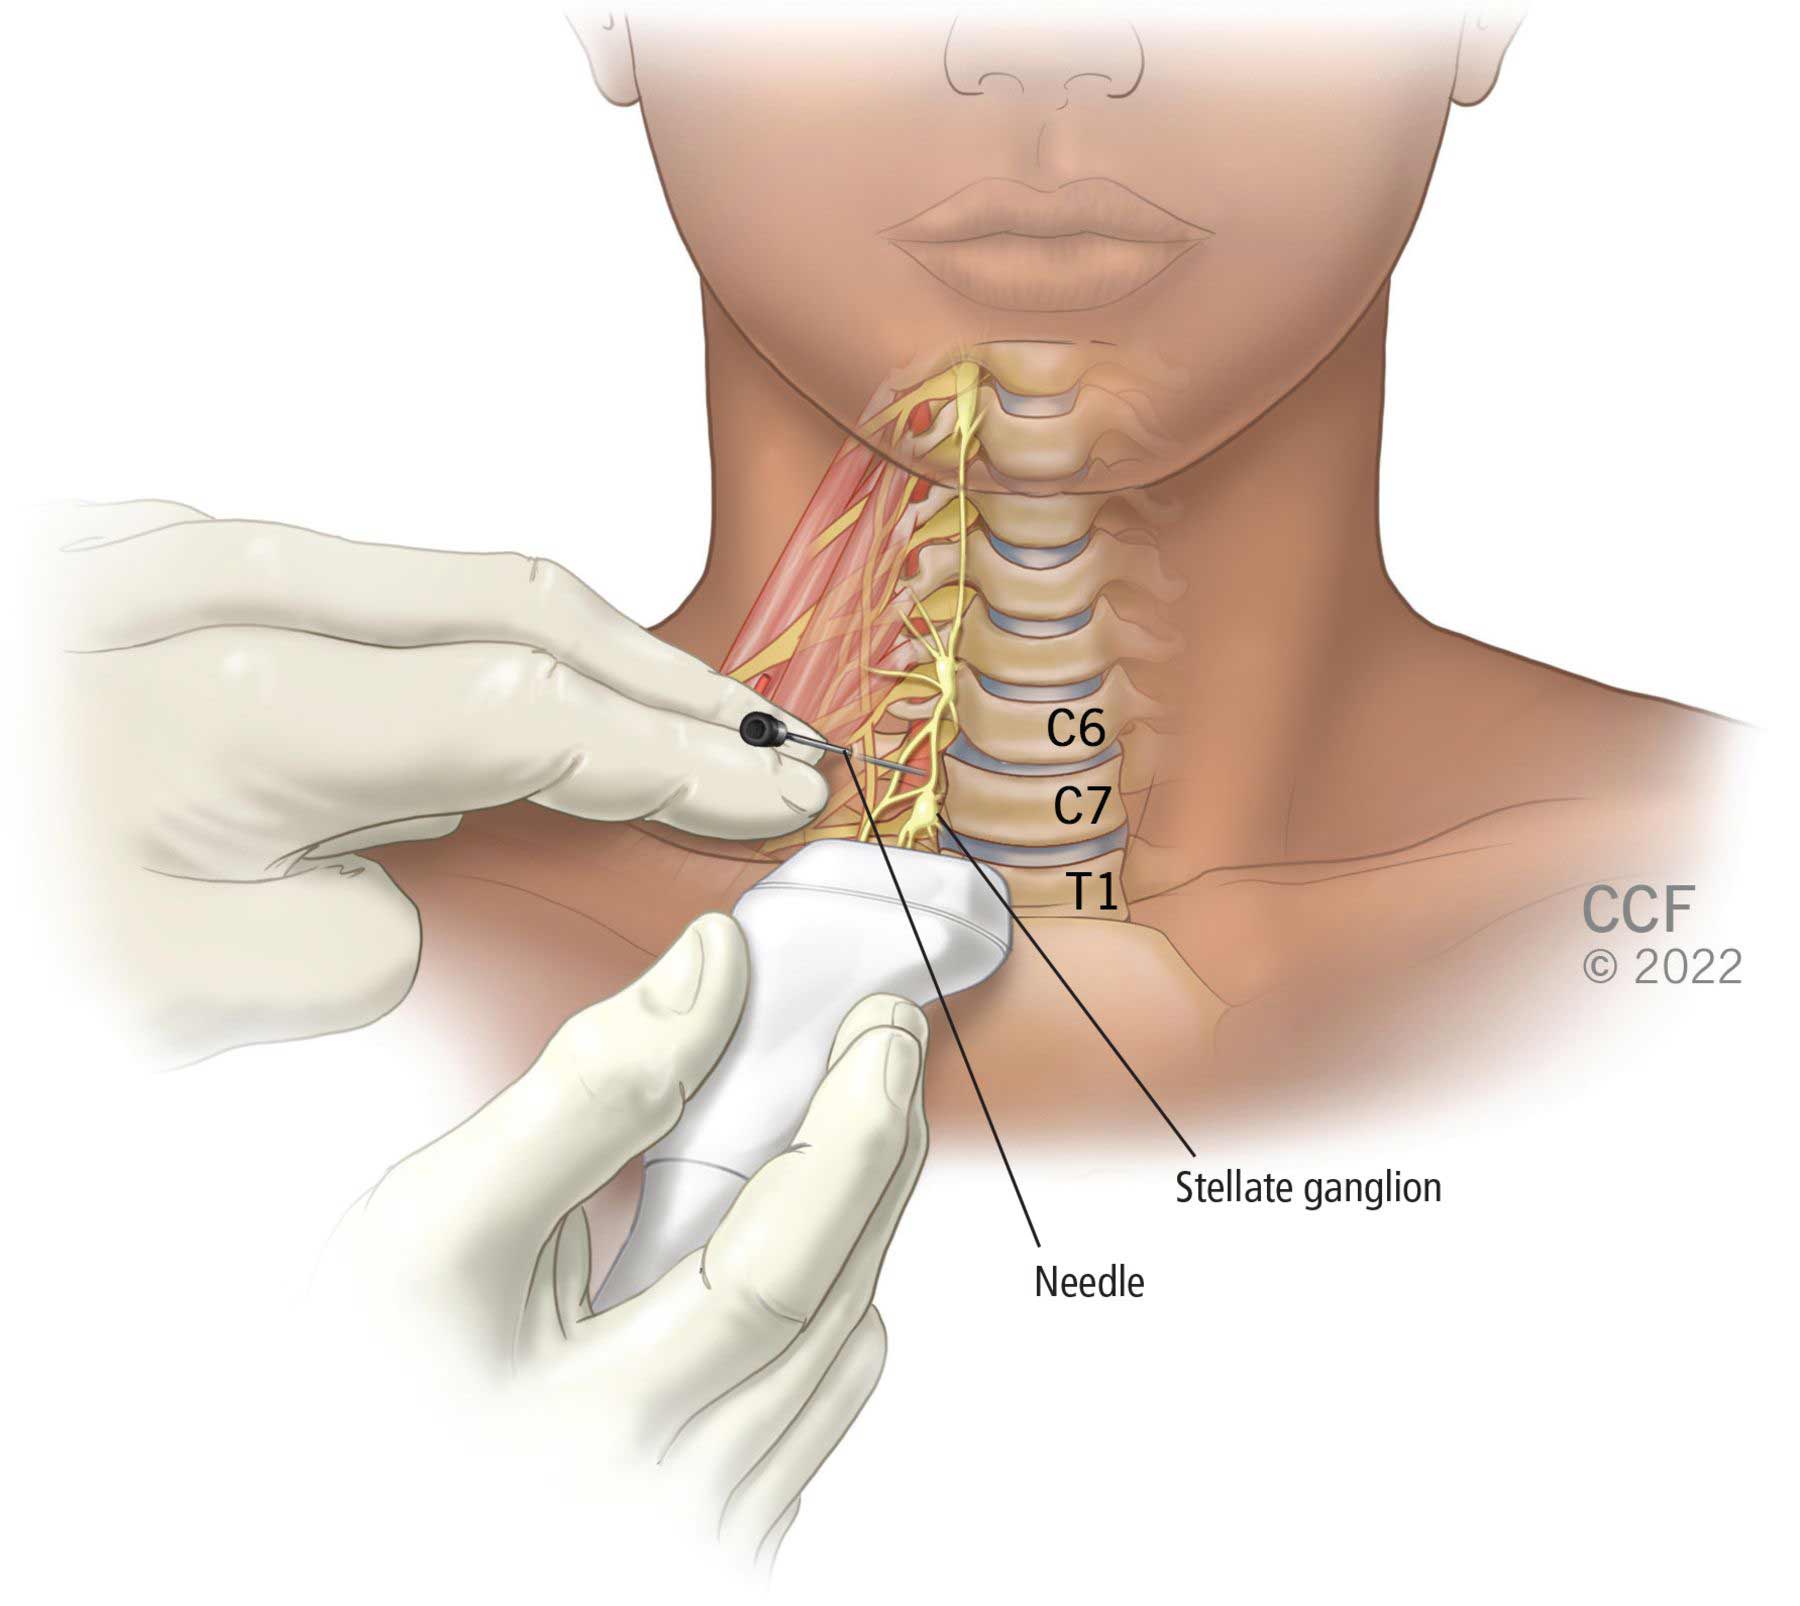 La posizione anatomica del ganglio stellato è sulla parte anteriore del collo, vicino alle vertebre C7 e T1.